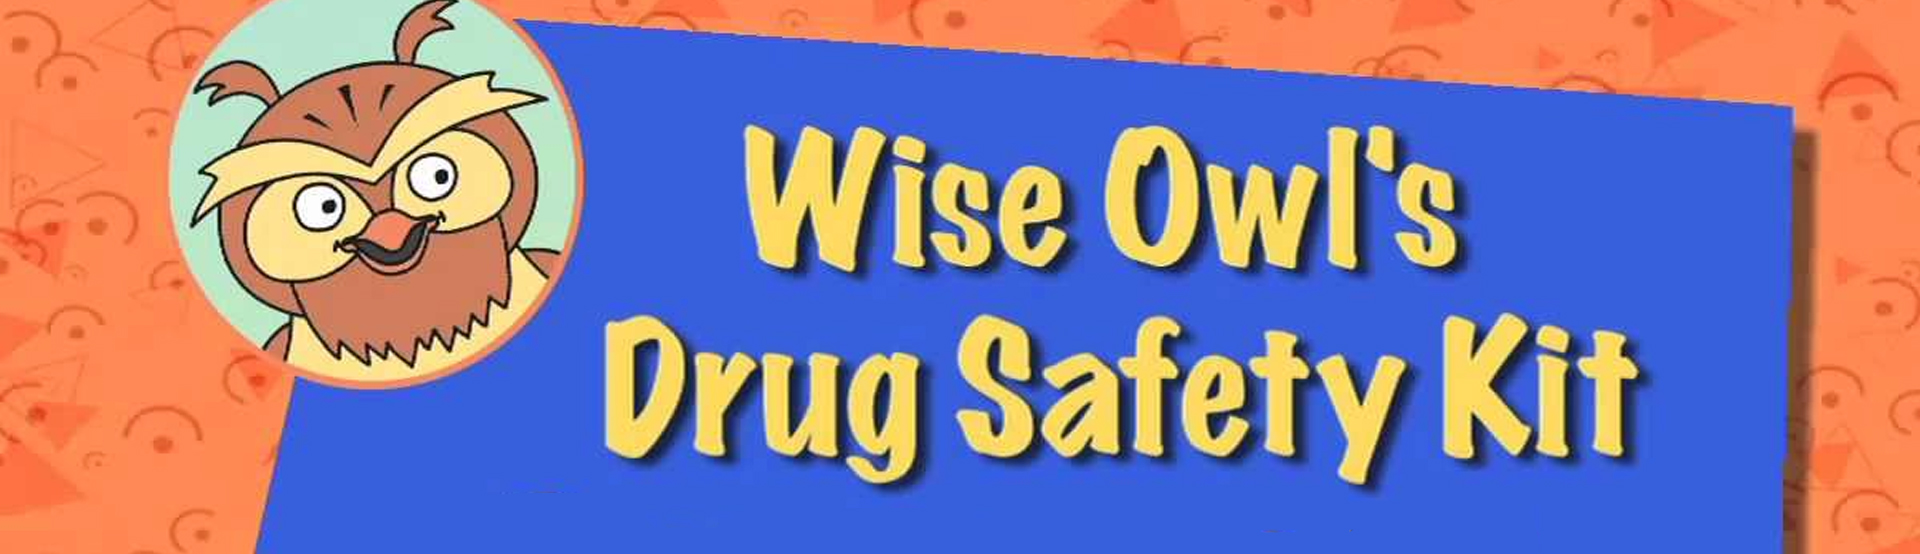 Wise Owl's Drug Safety Kit